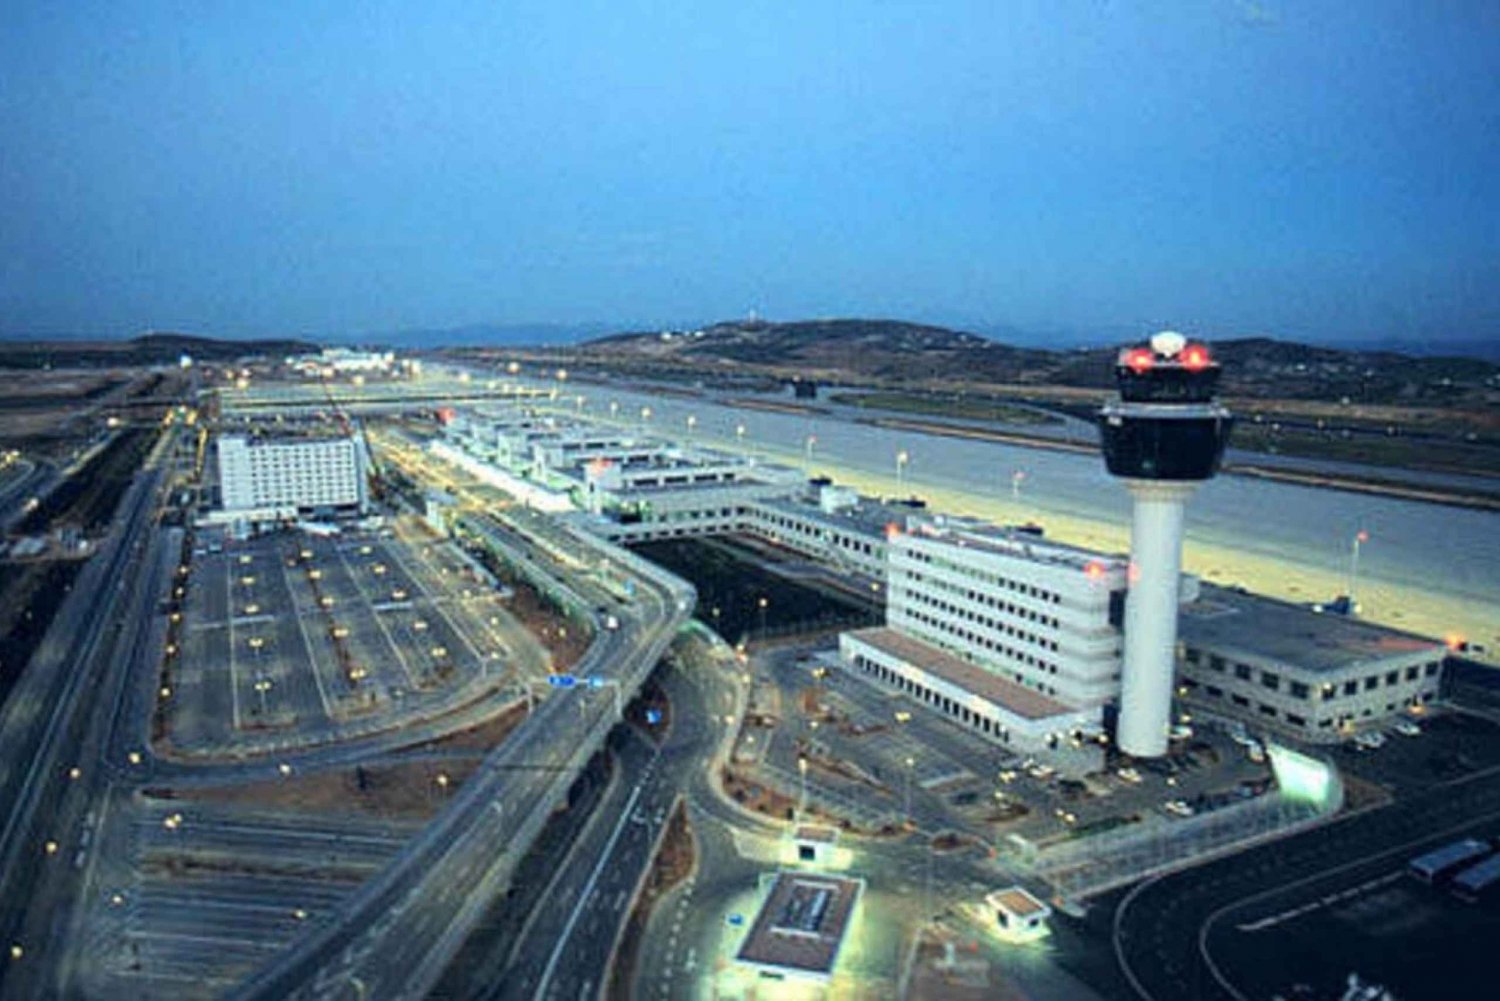 Athene luchthaven naar Piraeus cruisehaven VIP Mercedes minibus